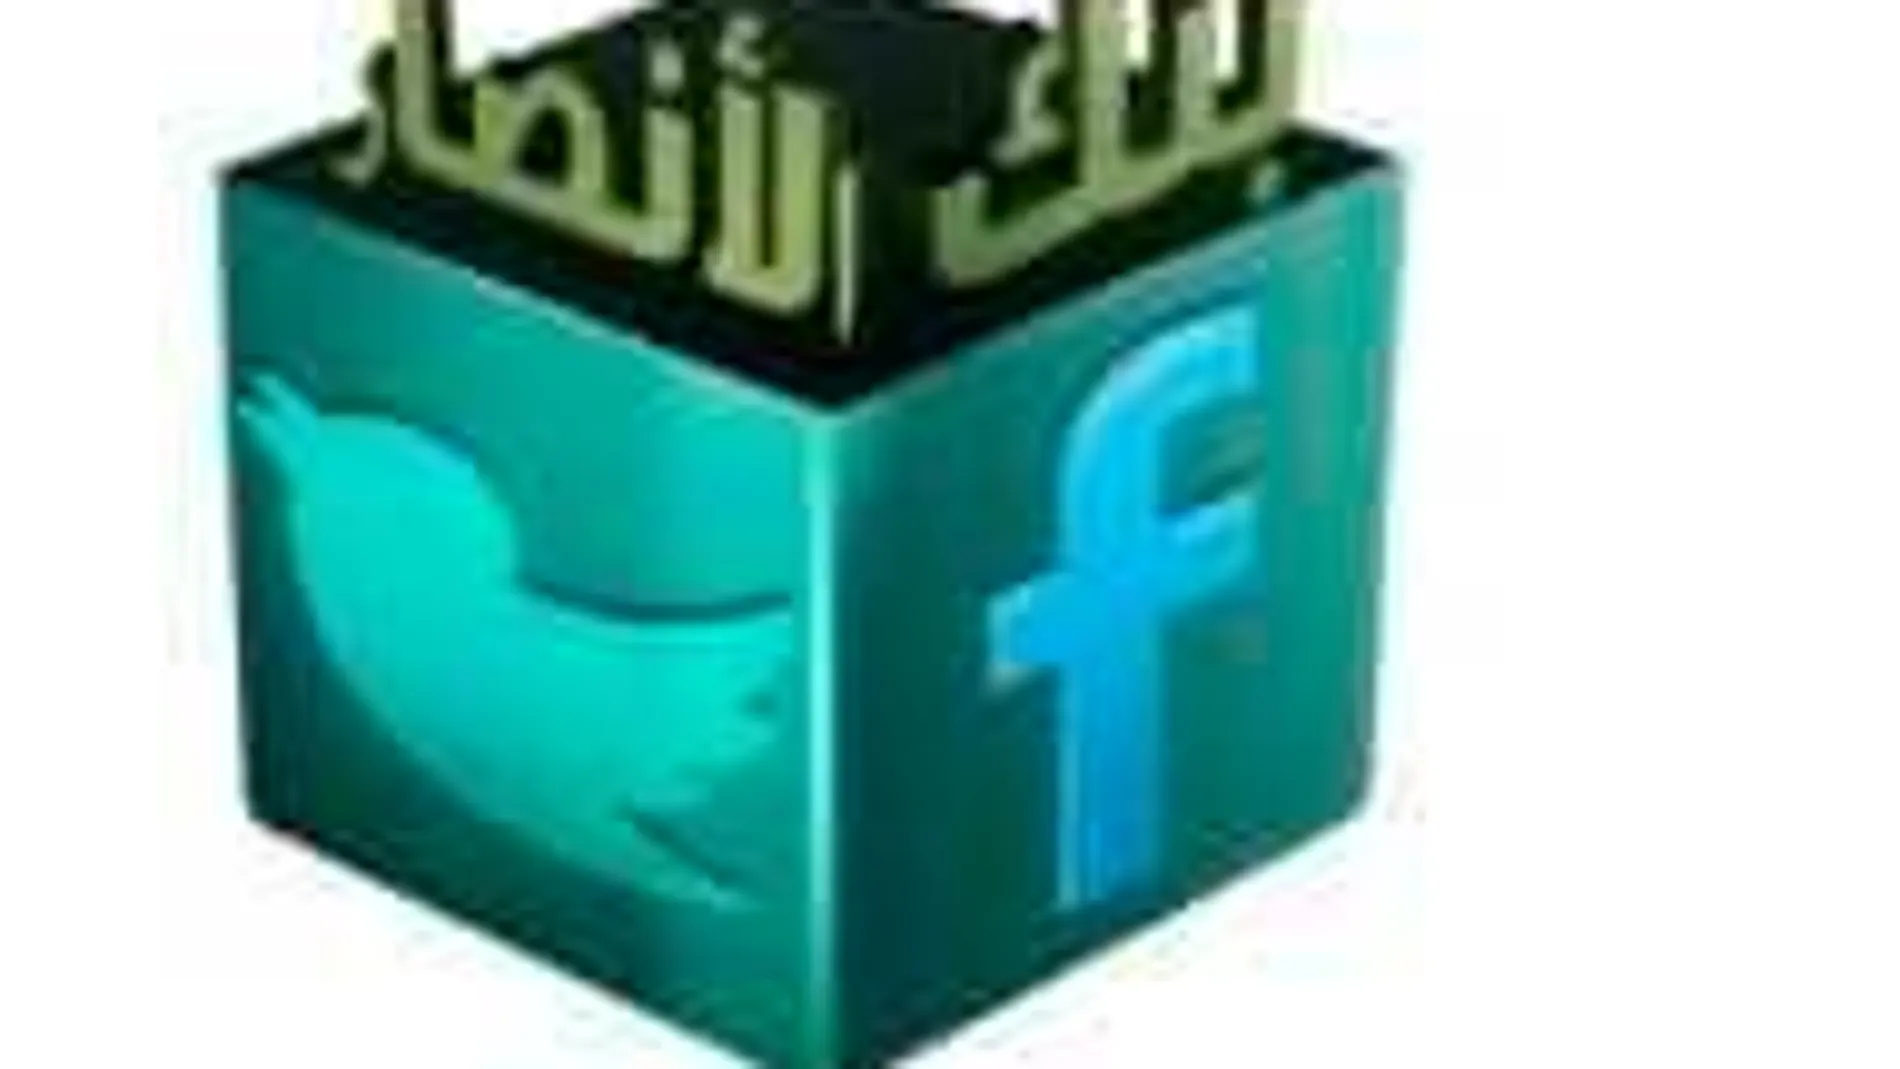 La Fundación Al-Ansar incluye instrucciones para luchar contra los "infieles"en las redes sociales